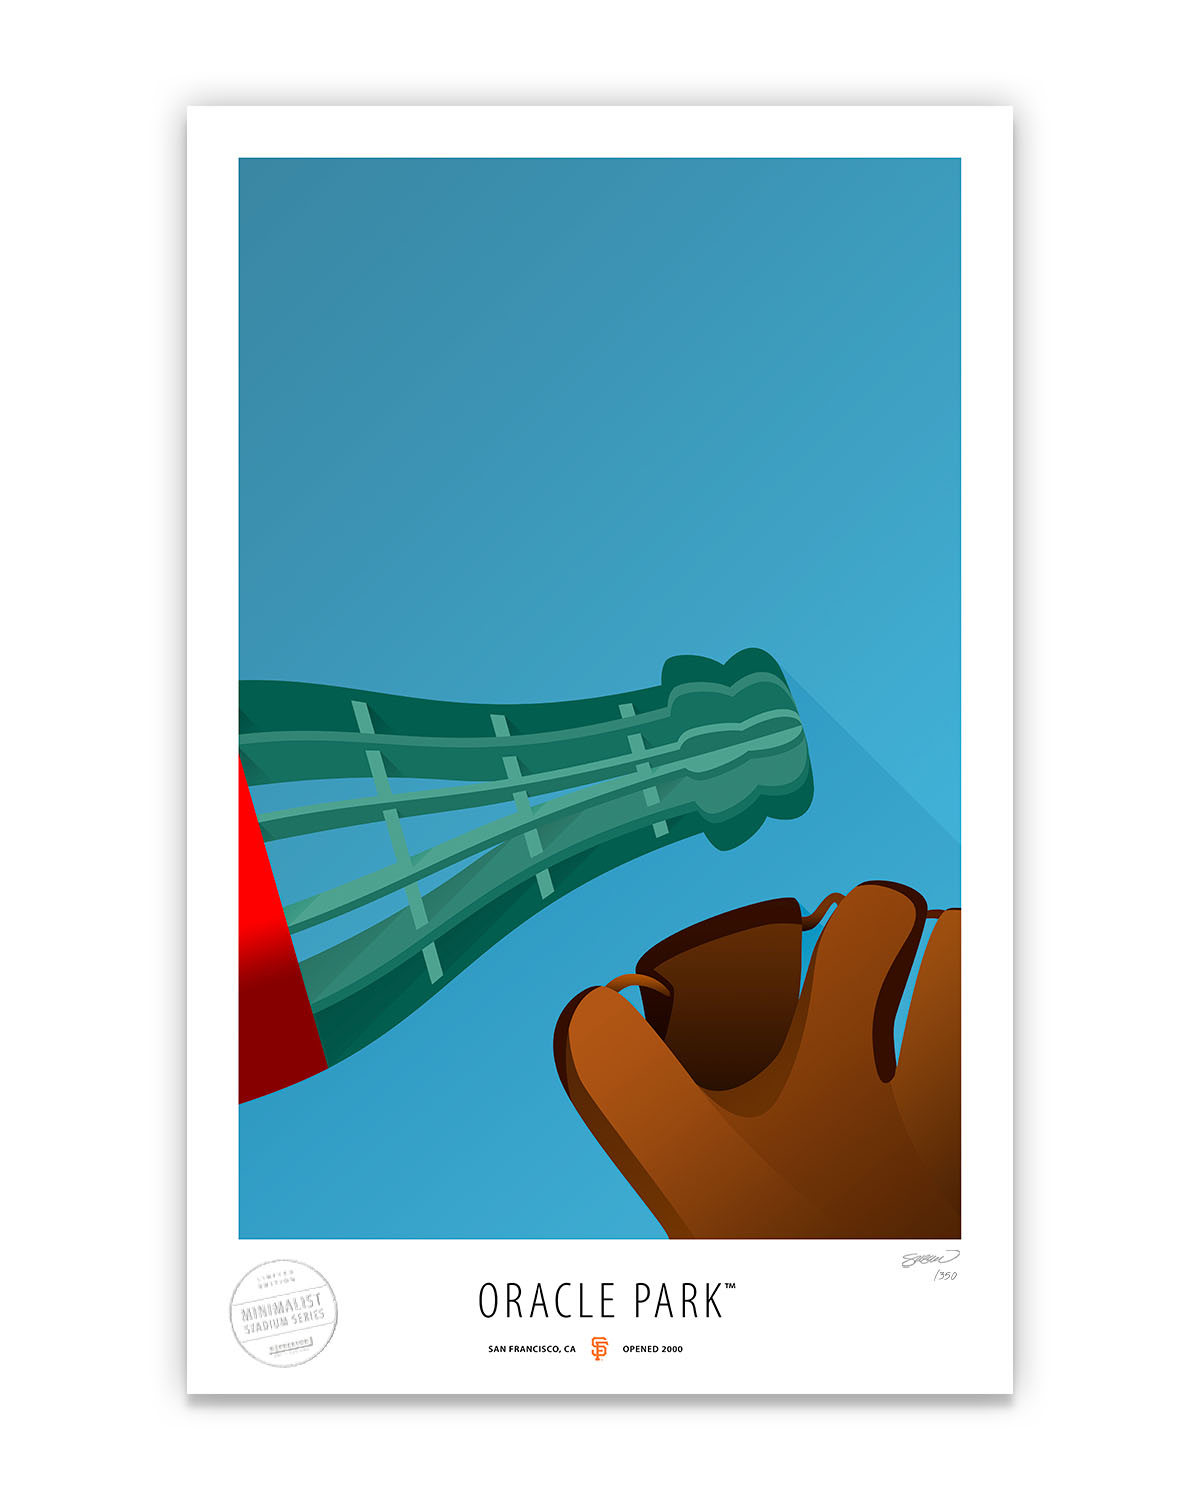 Minimalist Oracle Park